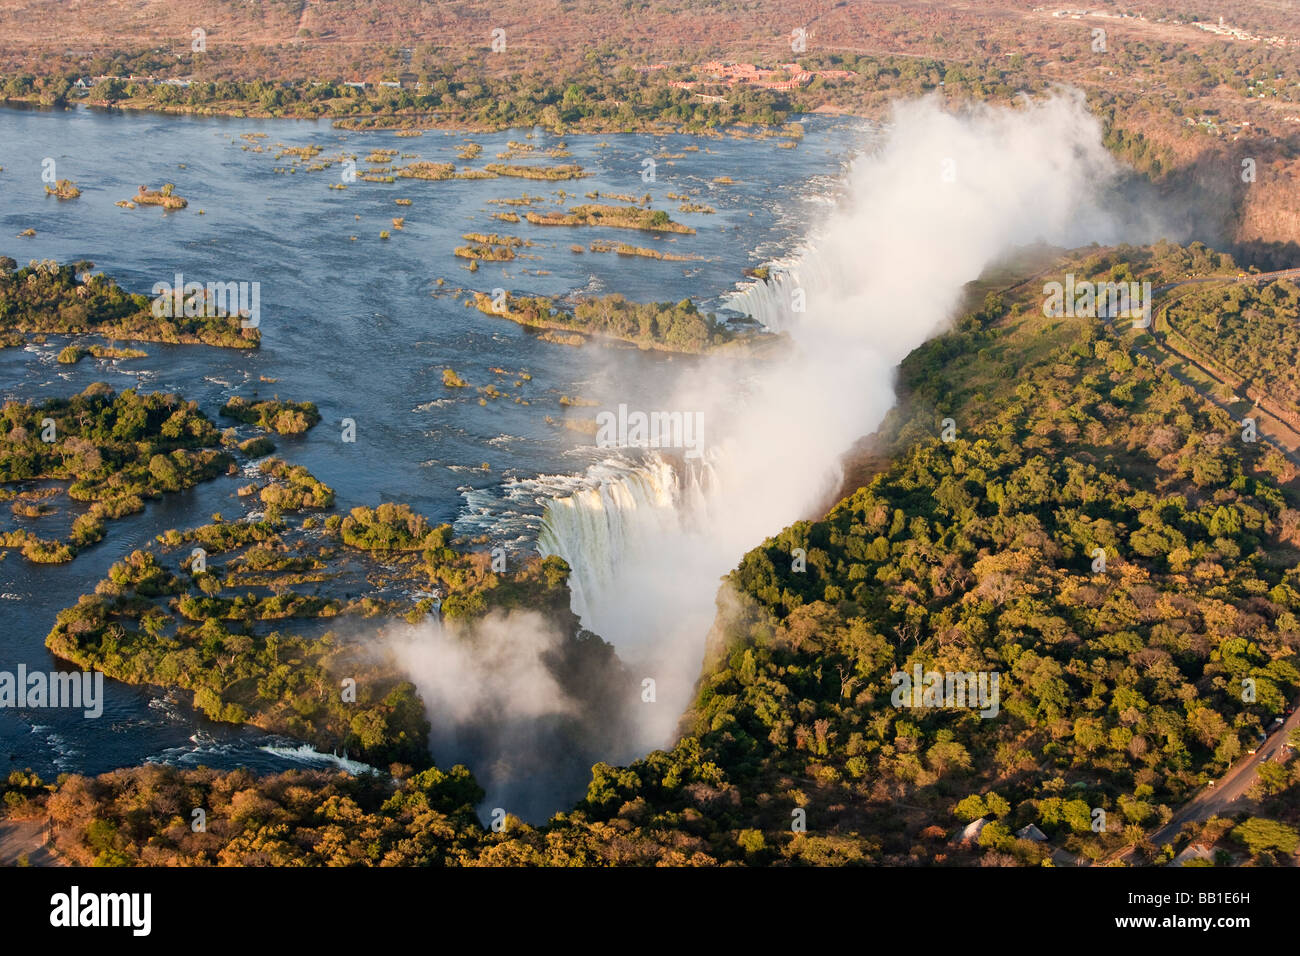 Vue aérienne de Misty Victoria Falls attraction touristique populaire en bordure de Zambie, Zimbabwe l'une des 7 merveilles naturelles du monde road échelle ajoute Banque D'Images